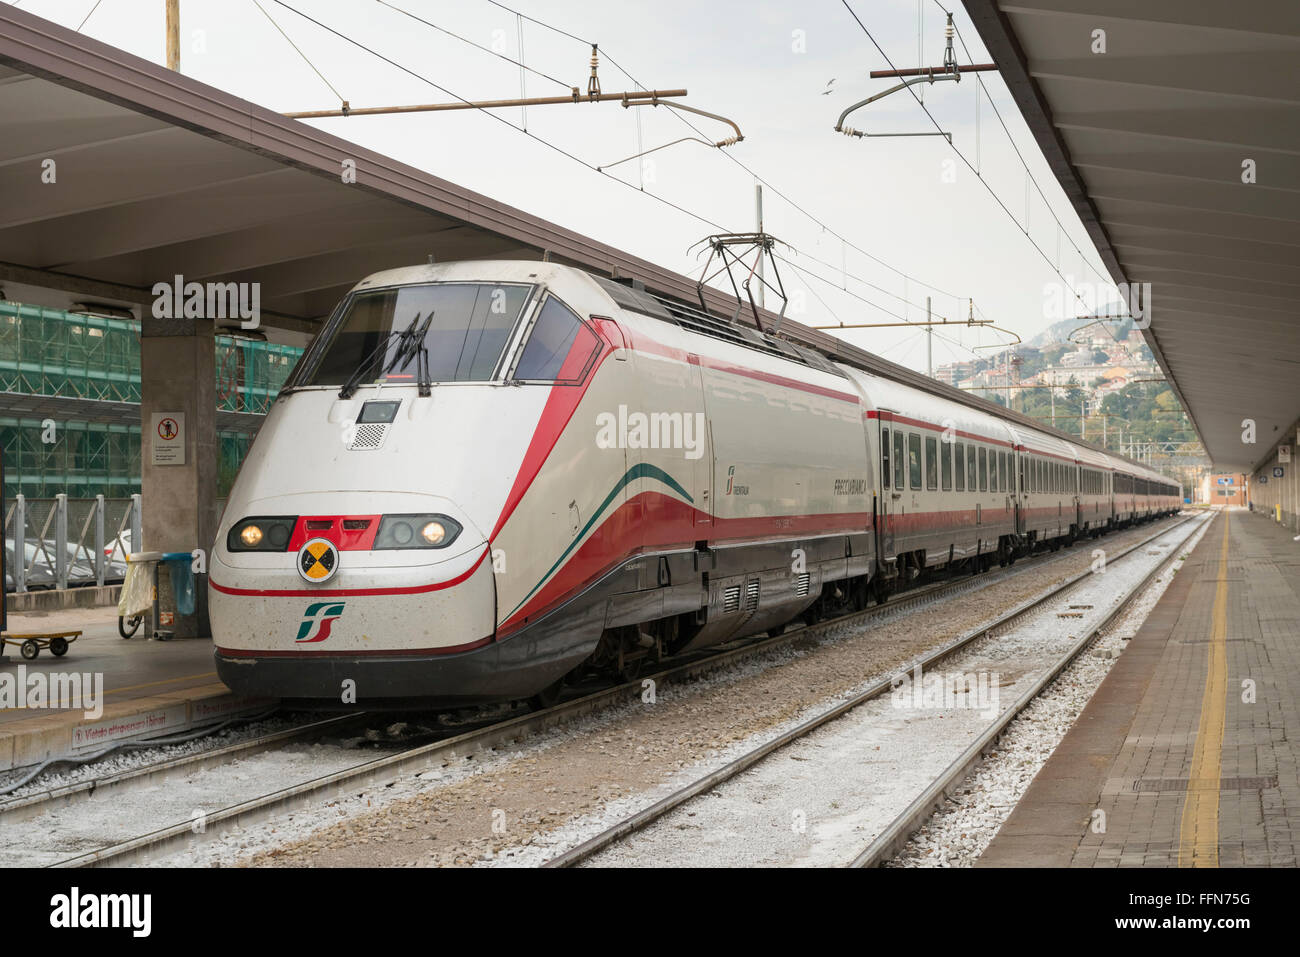 Trenitalia Train à Grande Vitesse à la Gare Centrale de Trieste, Trieste, Italie, Europe Banque D'Images